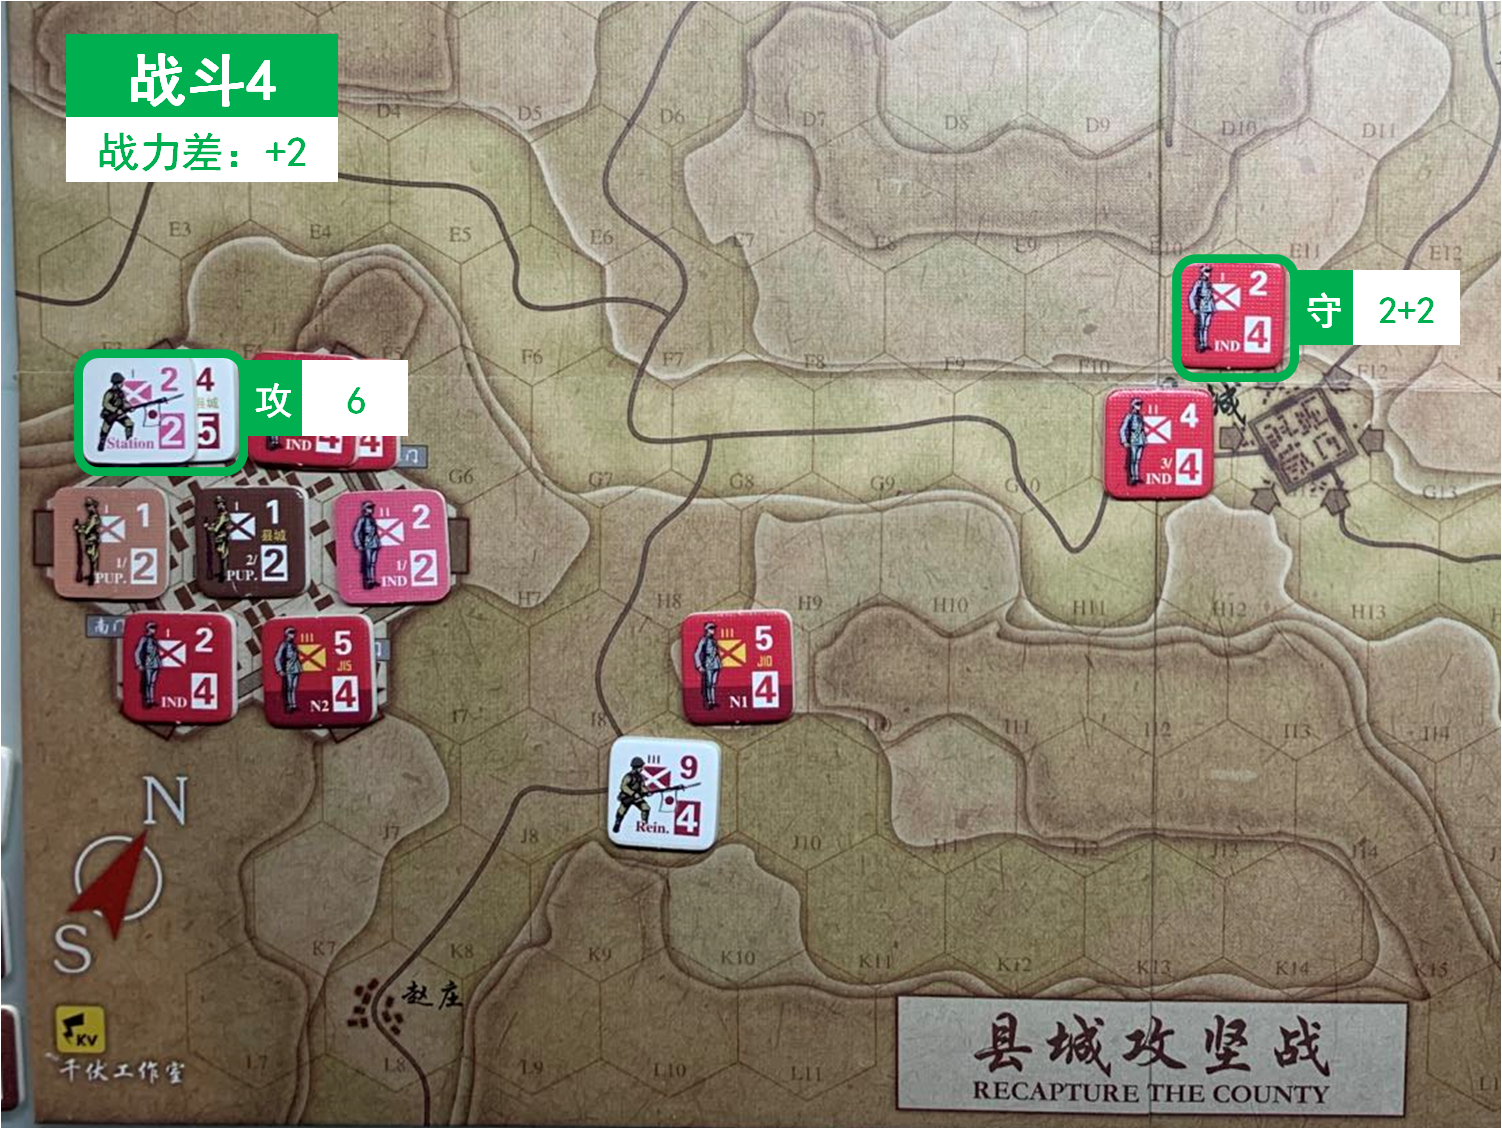 第二回合 日方战斗阶段 战斗4 战斗力差值